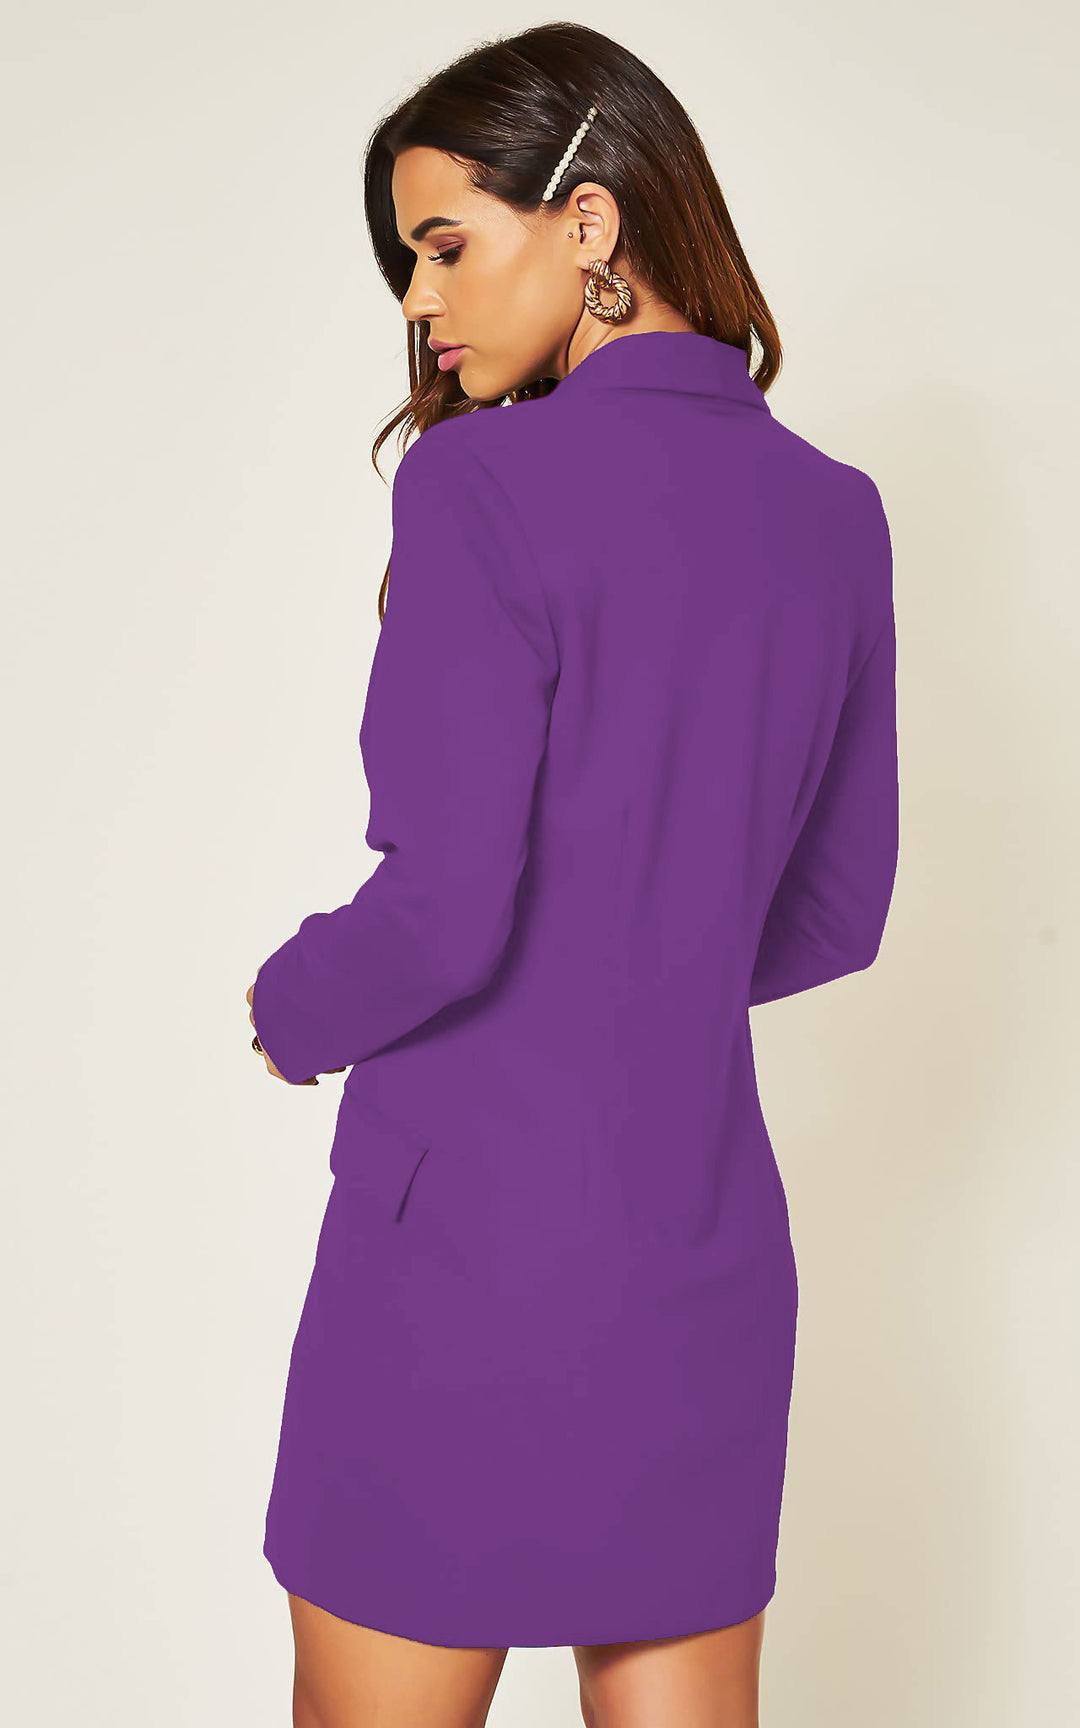 Luxe Stain Breasted Asymmetric Blazer Dress In Purple